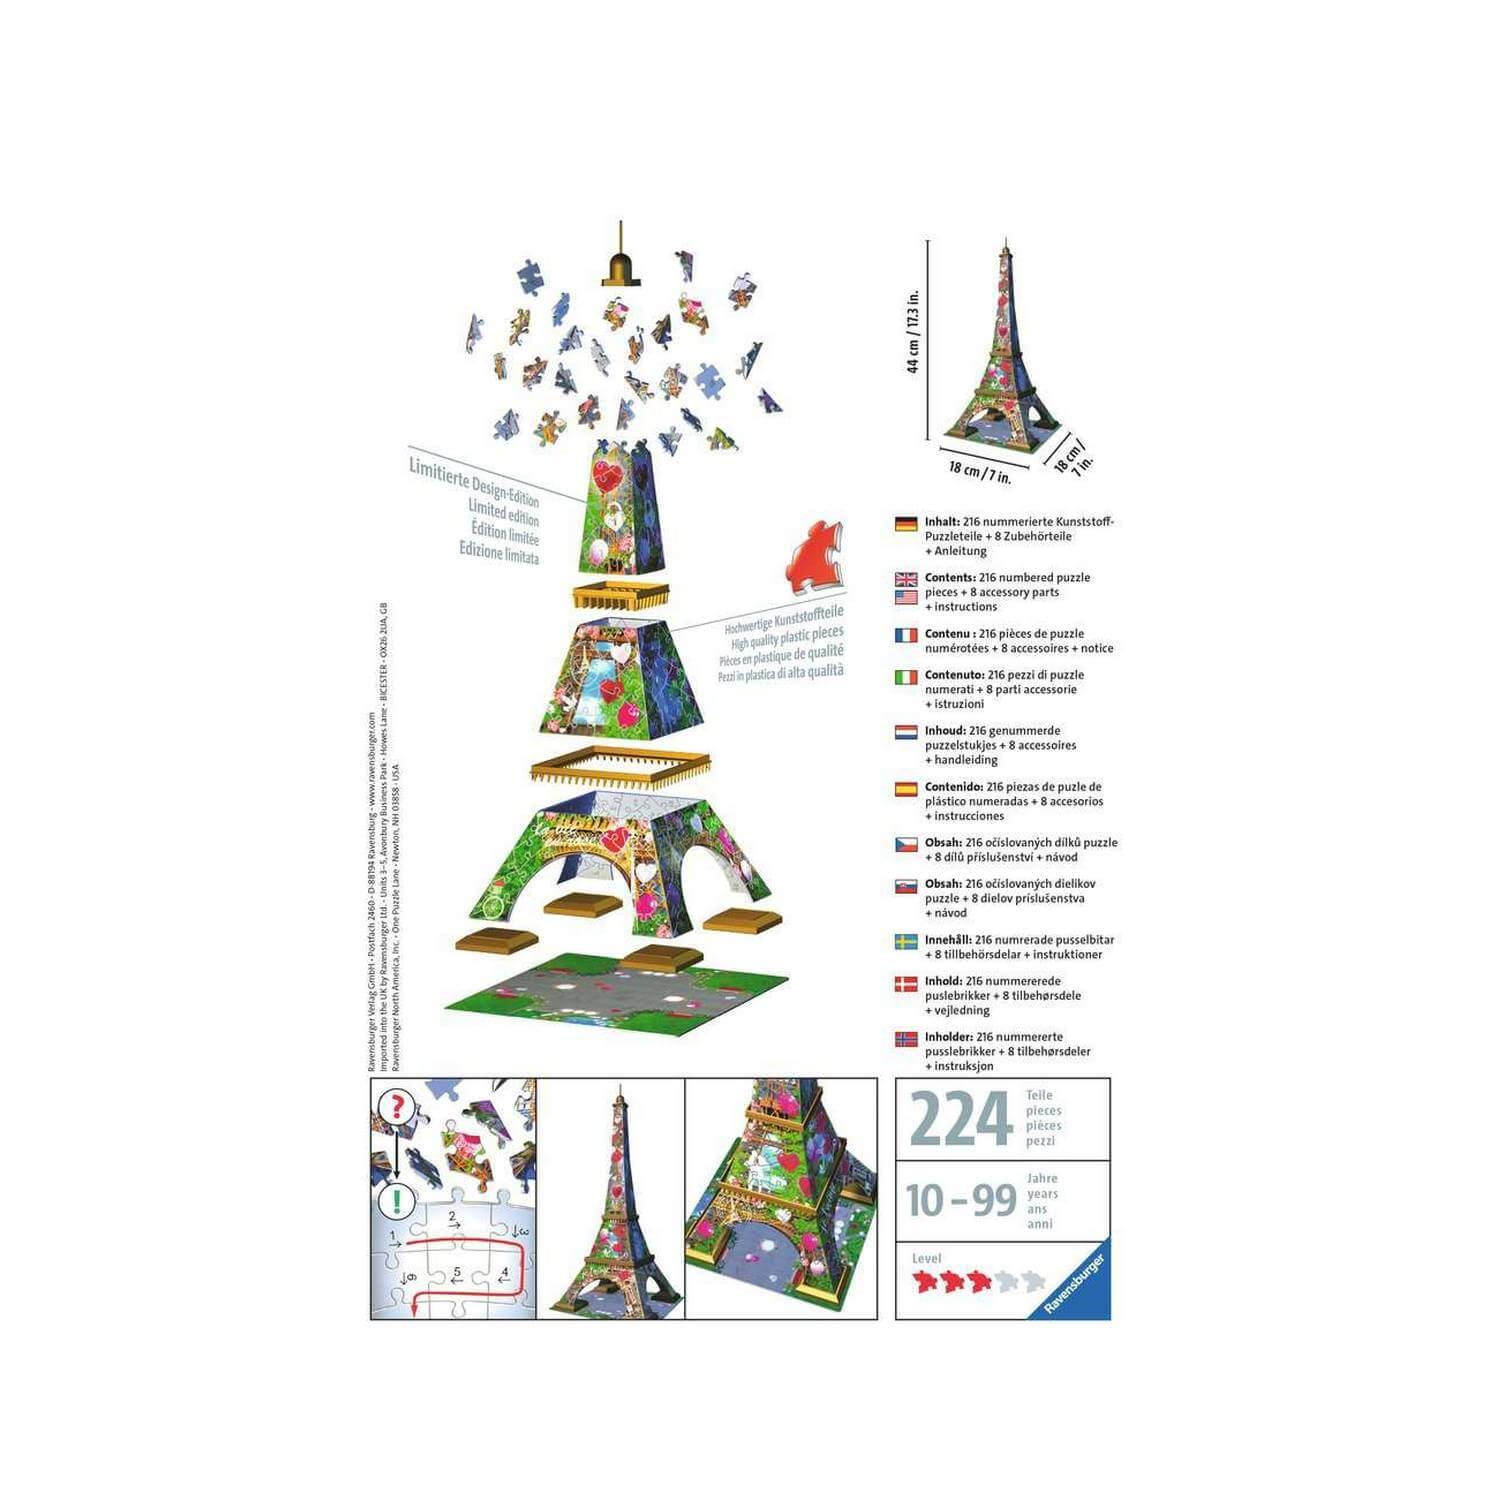 Puzzle 3D Tour Eiffel - Ravensburger - 216 pièces - sans colle -  Architecture et monument bleu - Ravensburger